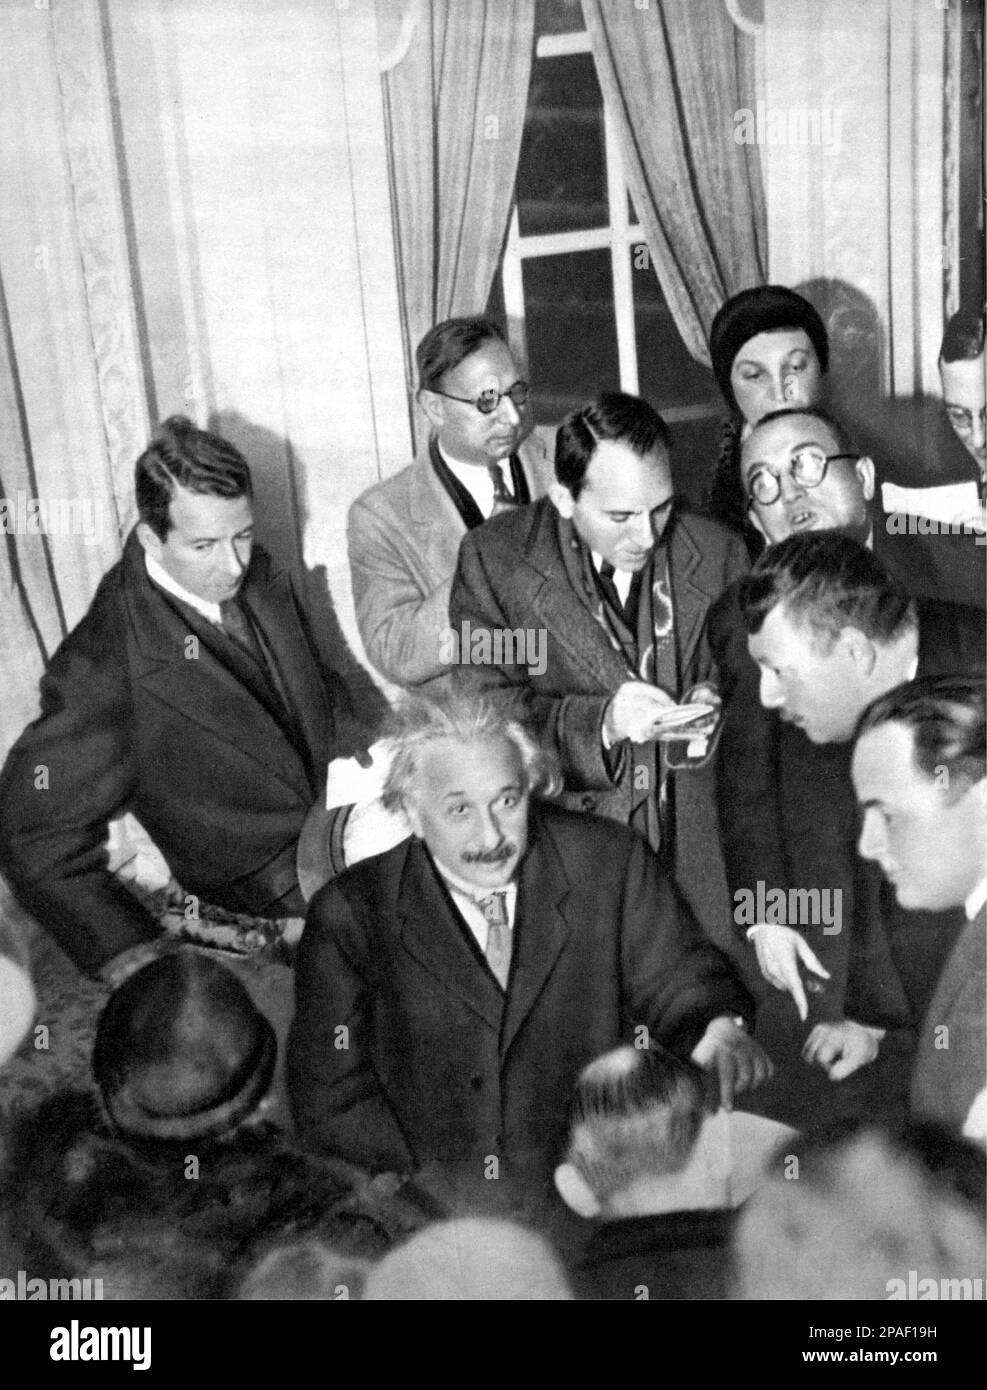 1920's : The german Physicist  ALBERT EINSTEIN ( 1879 - 1955 ) , 1921 Nobel Prize winner at press conference . - foto storiche - foto storica  - scienziato - scientist  - portrait - ritratto  -  Physics - FISICA - FISICO - SCIENZA - SCIENCE  - baffi - moustache - PREMIO NOBEL PER LA FISICA - Prize -  Atomica - Atomo  - scienziato - genius - genio ----      ARCHIVIO GBB Argenzia Stock Photo